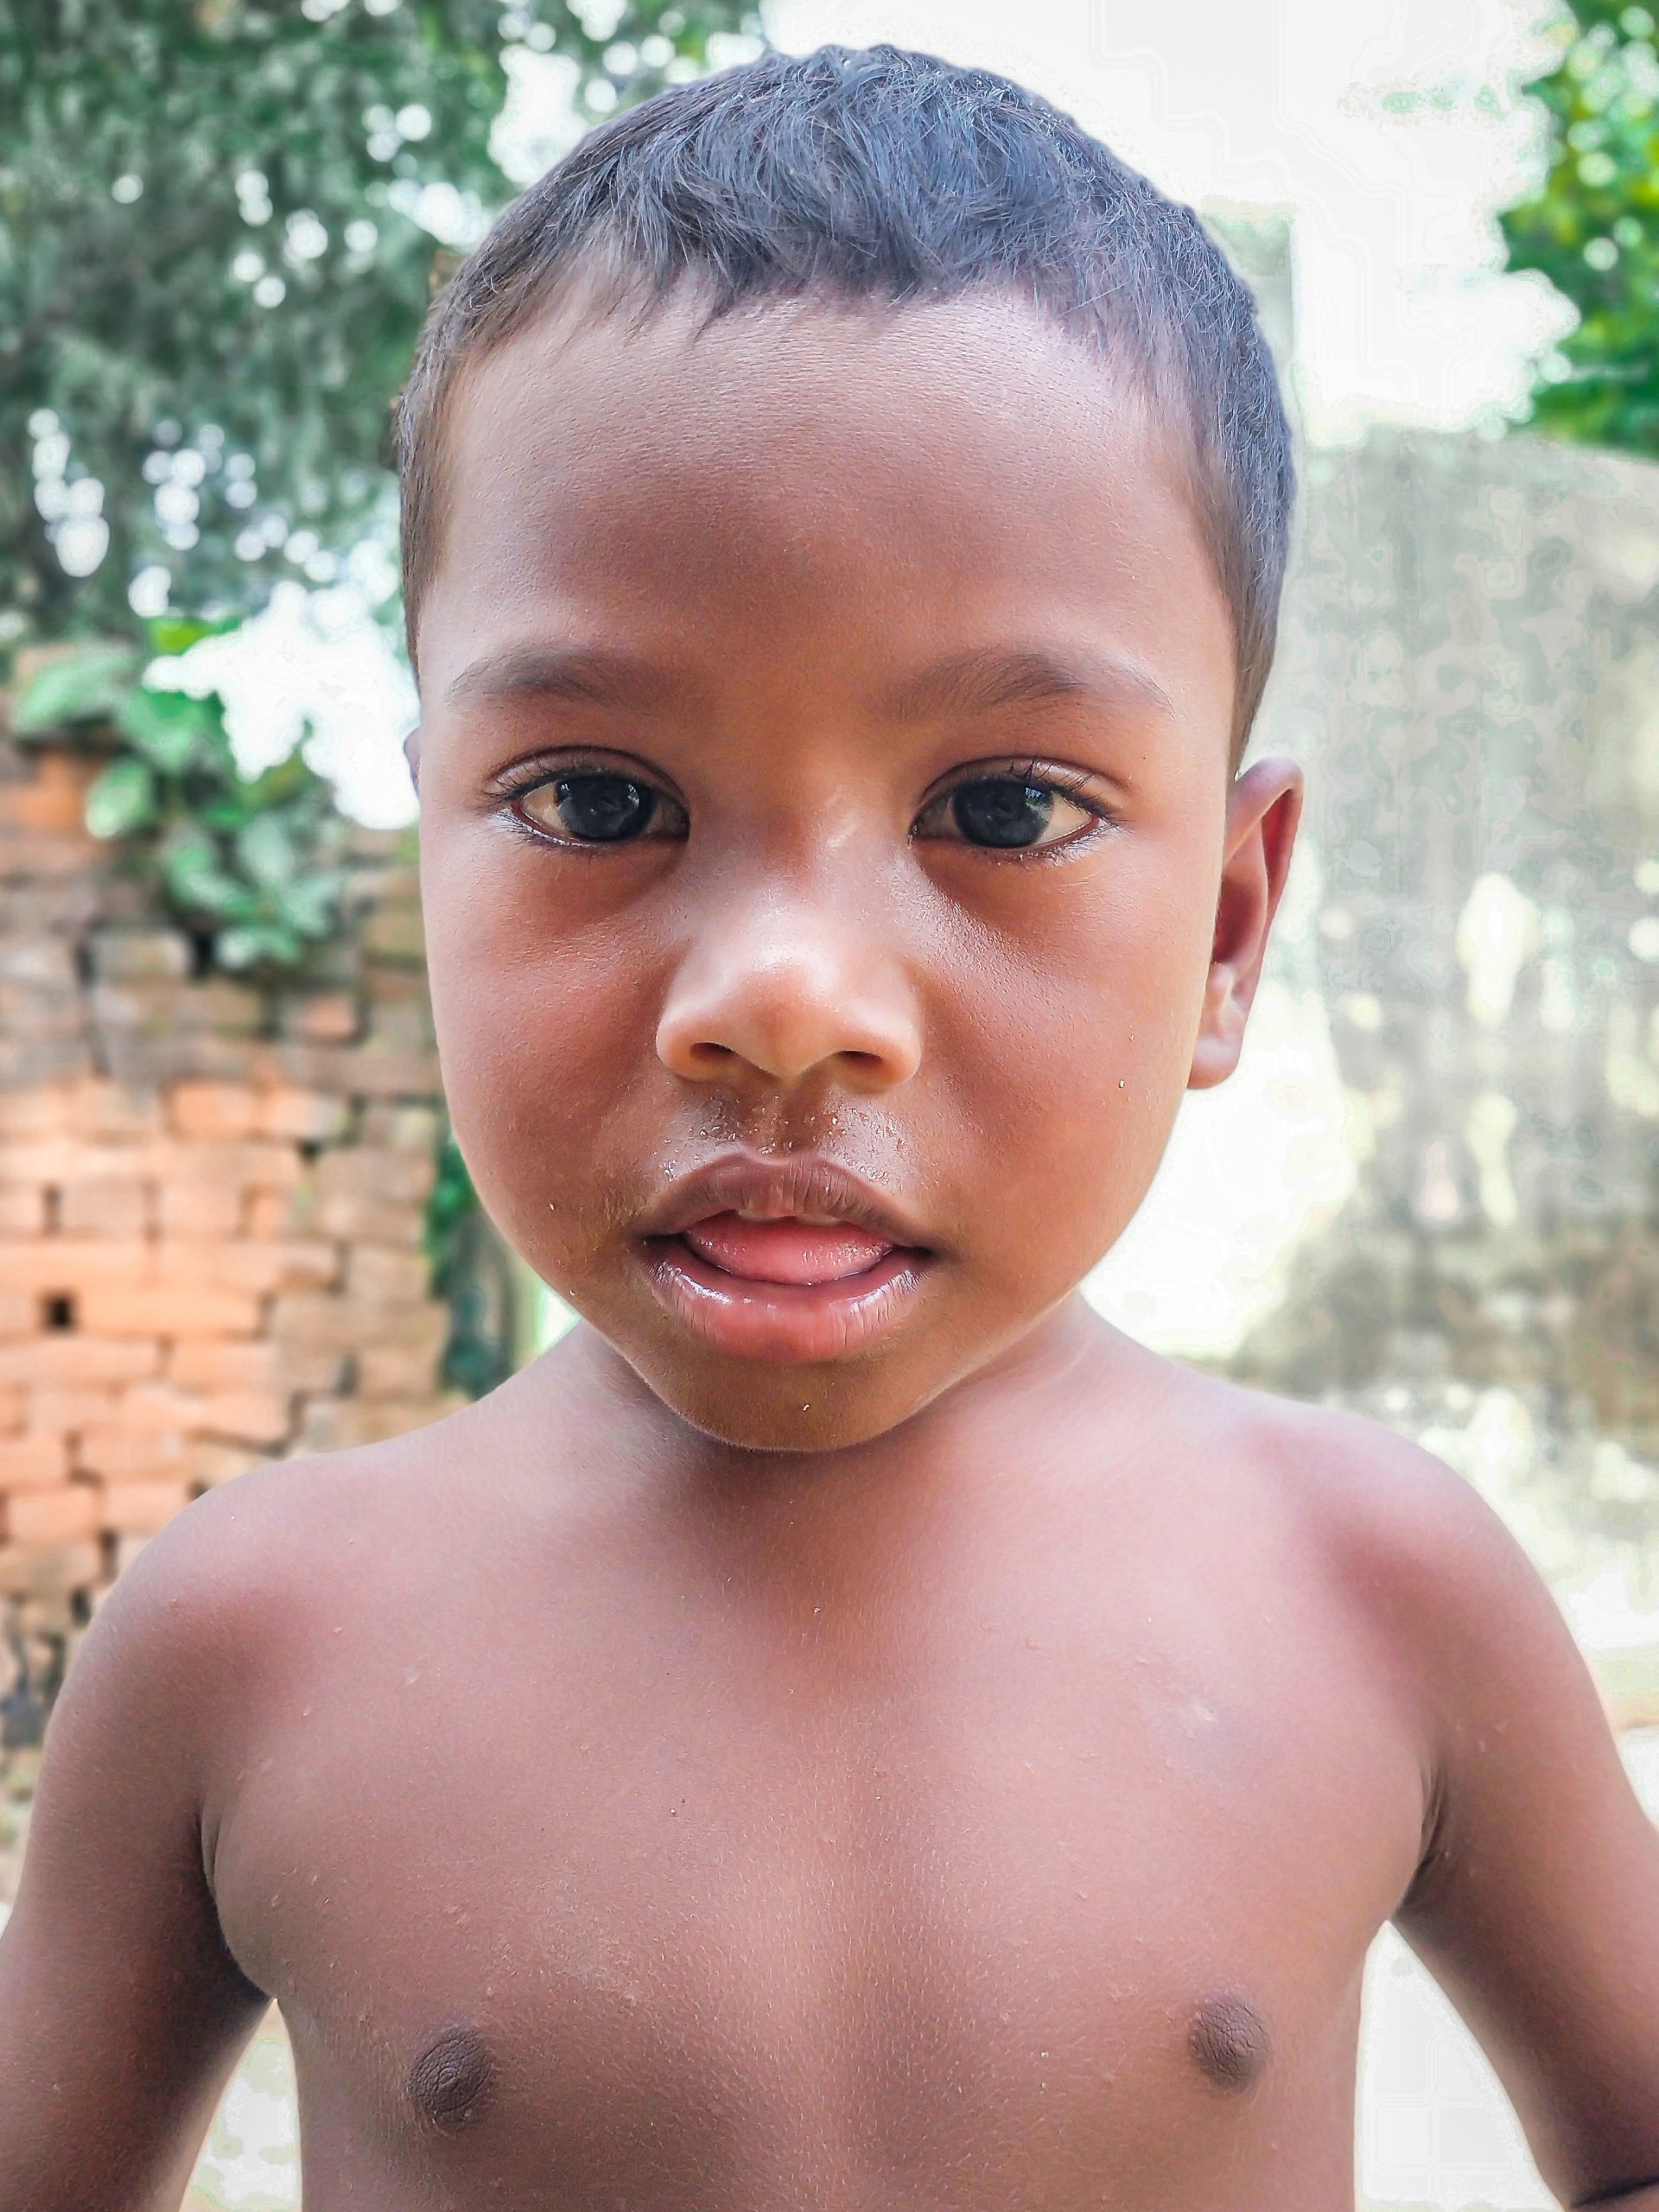 A kid in a village